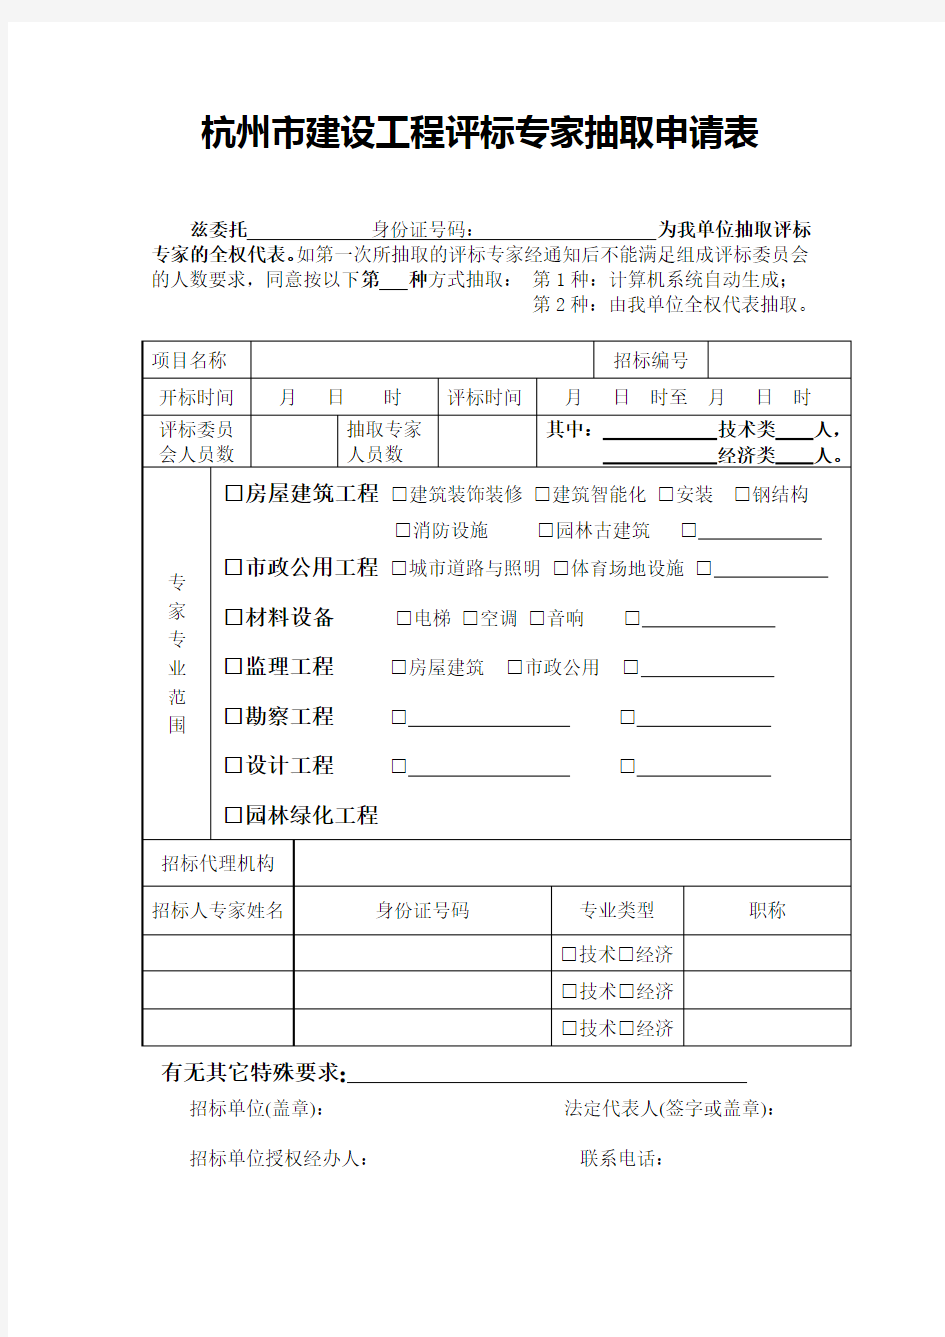 杭州市建设工程评标专家抽取申请表